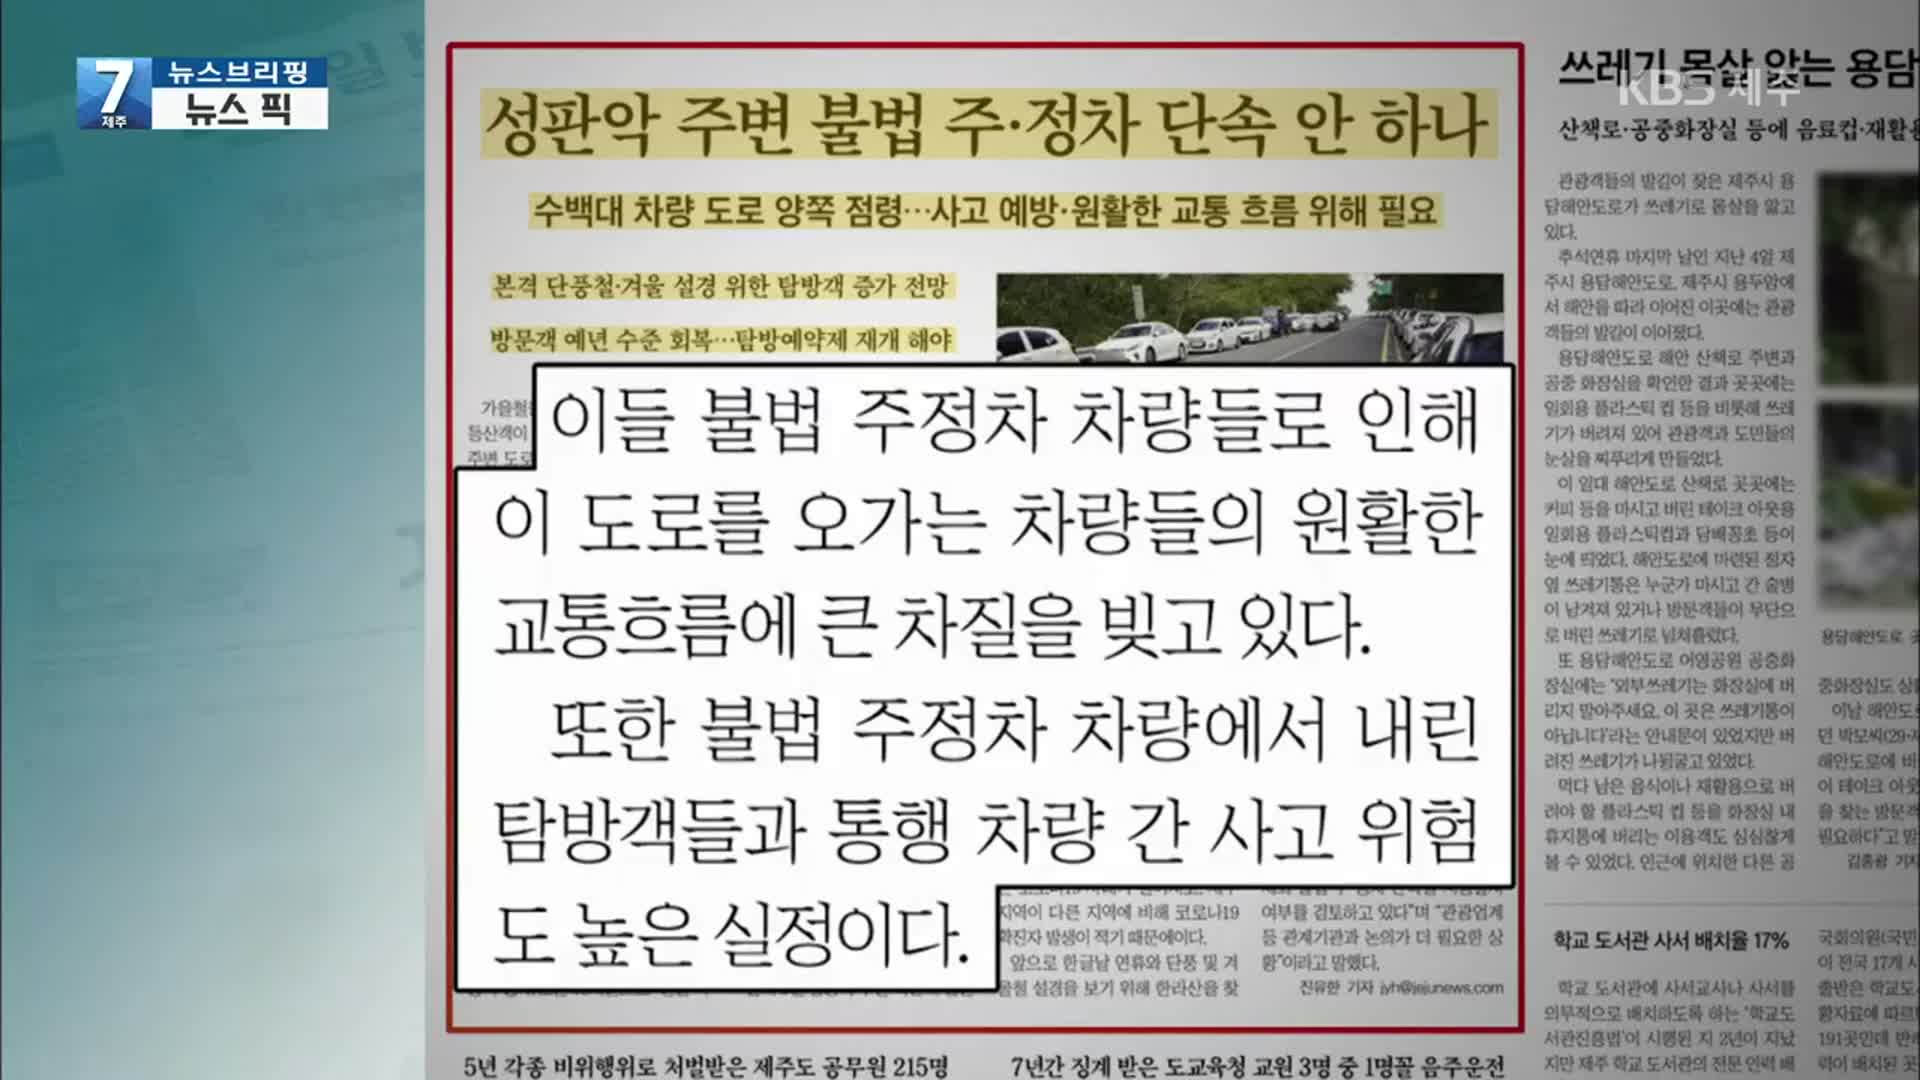 [뉴스브리핑] “성판악 주변 불법 주정차 단속 안 하나” 외